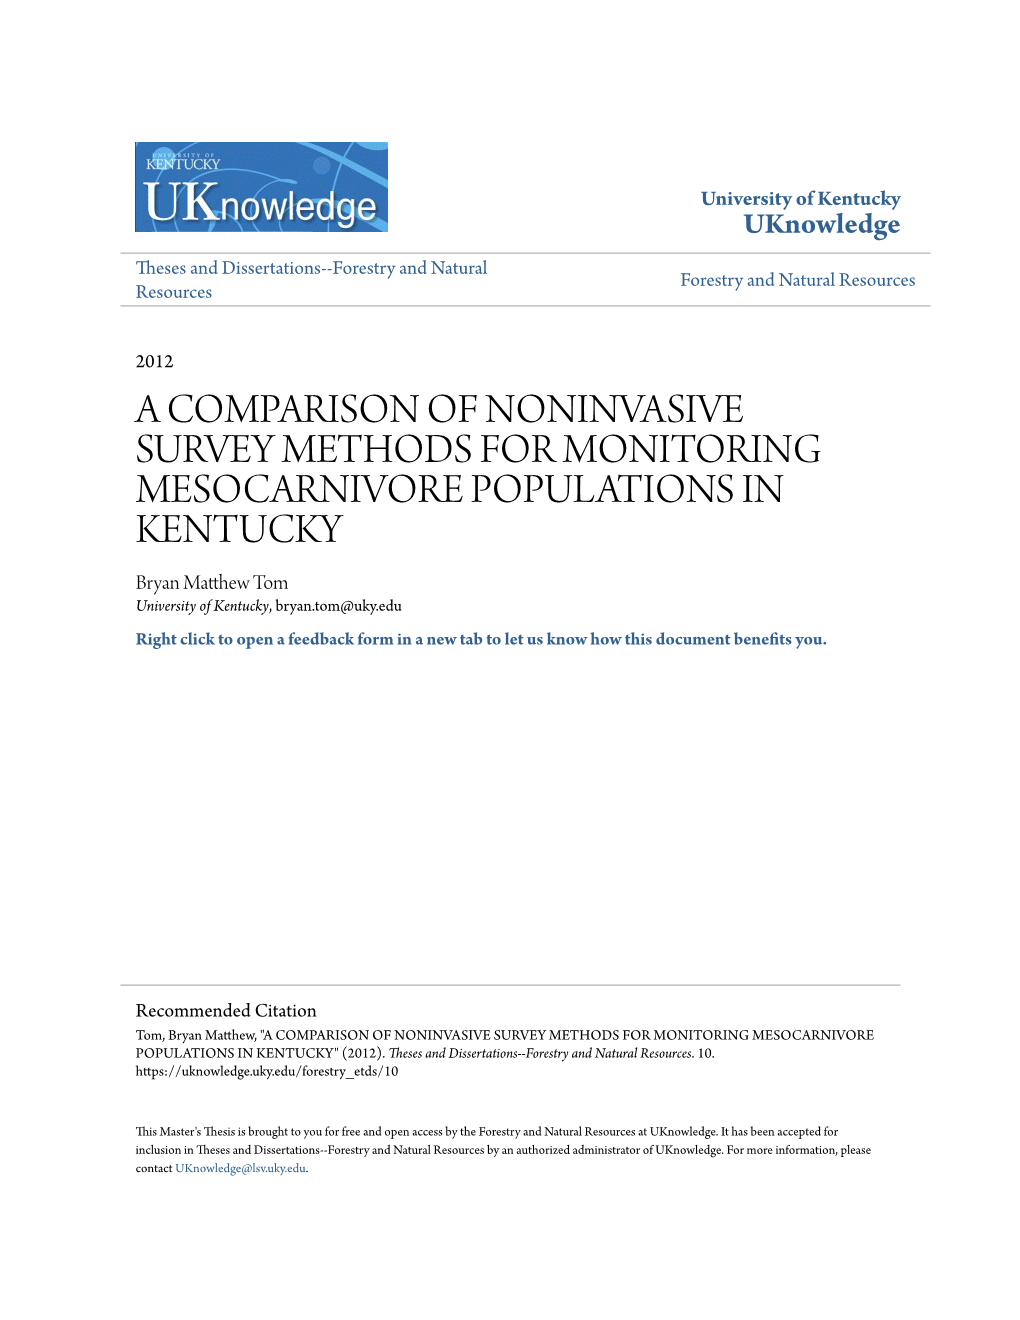 A Comparison of Noninvasive Survey Methods For